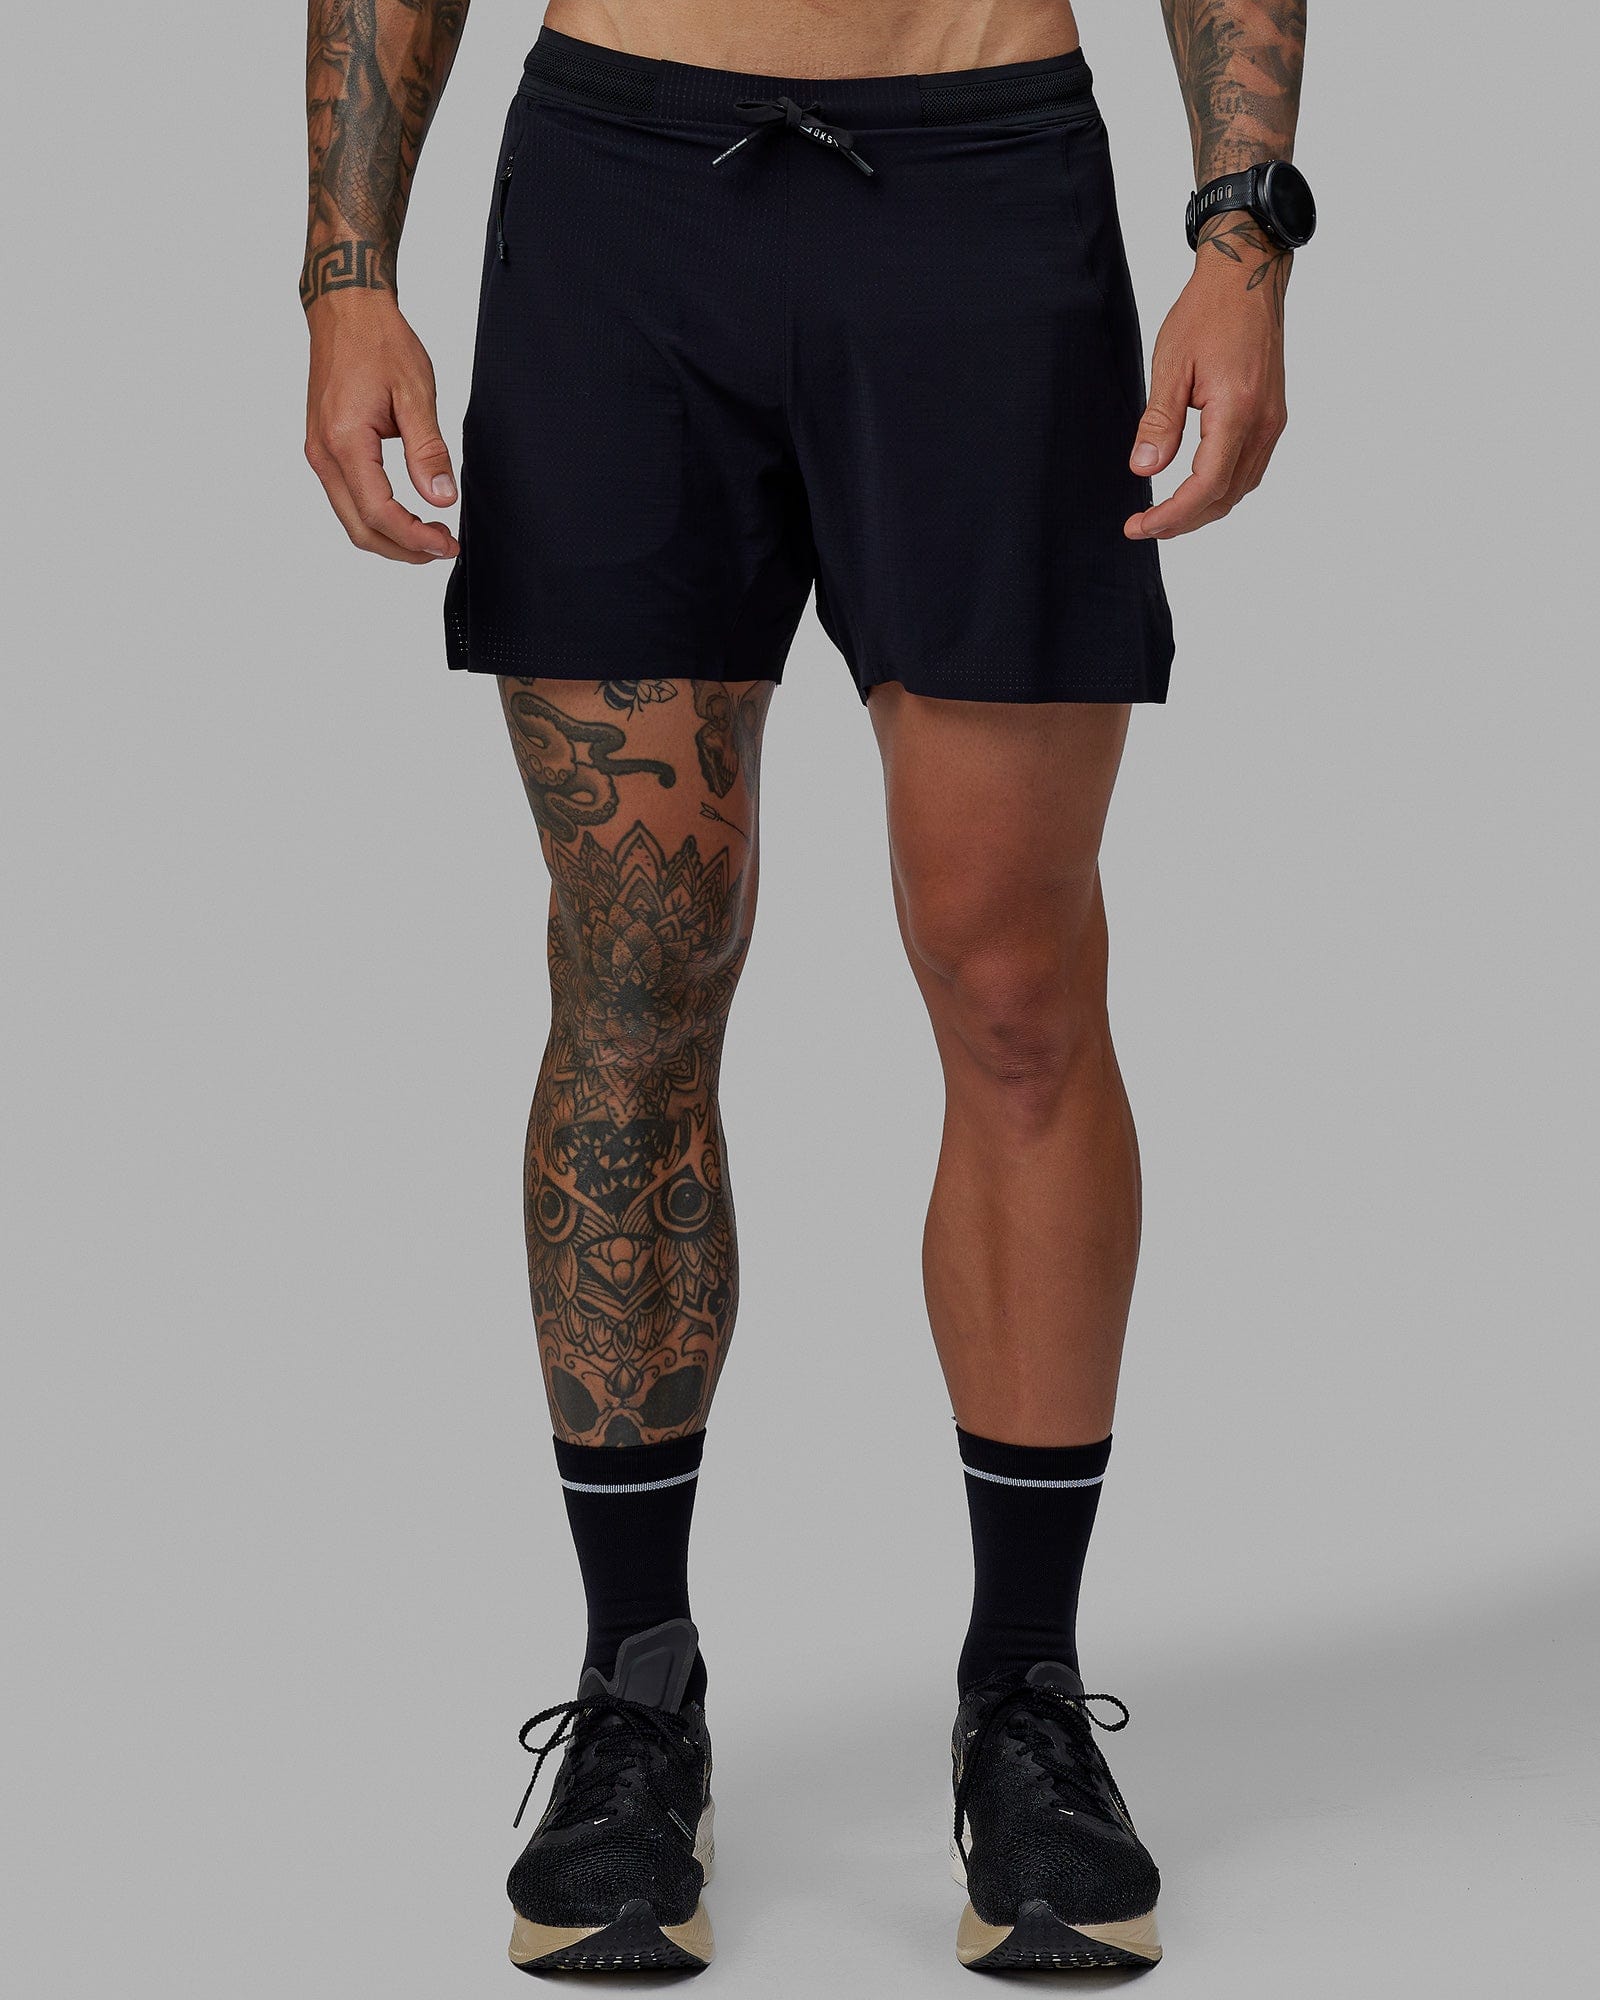 Nike Men's Flex Stride 5 Brief Running Shorts, Black/Reflective